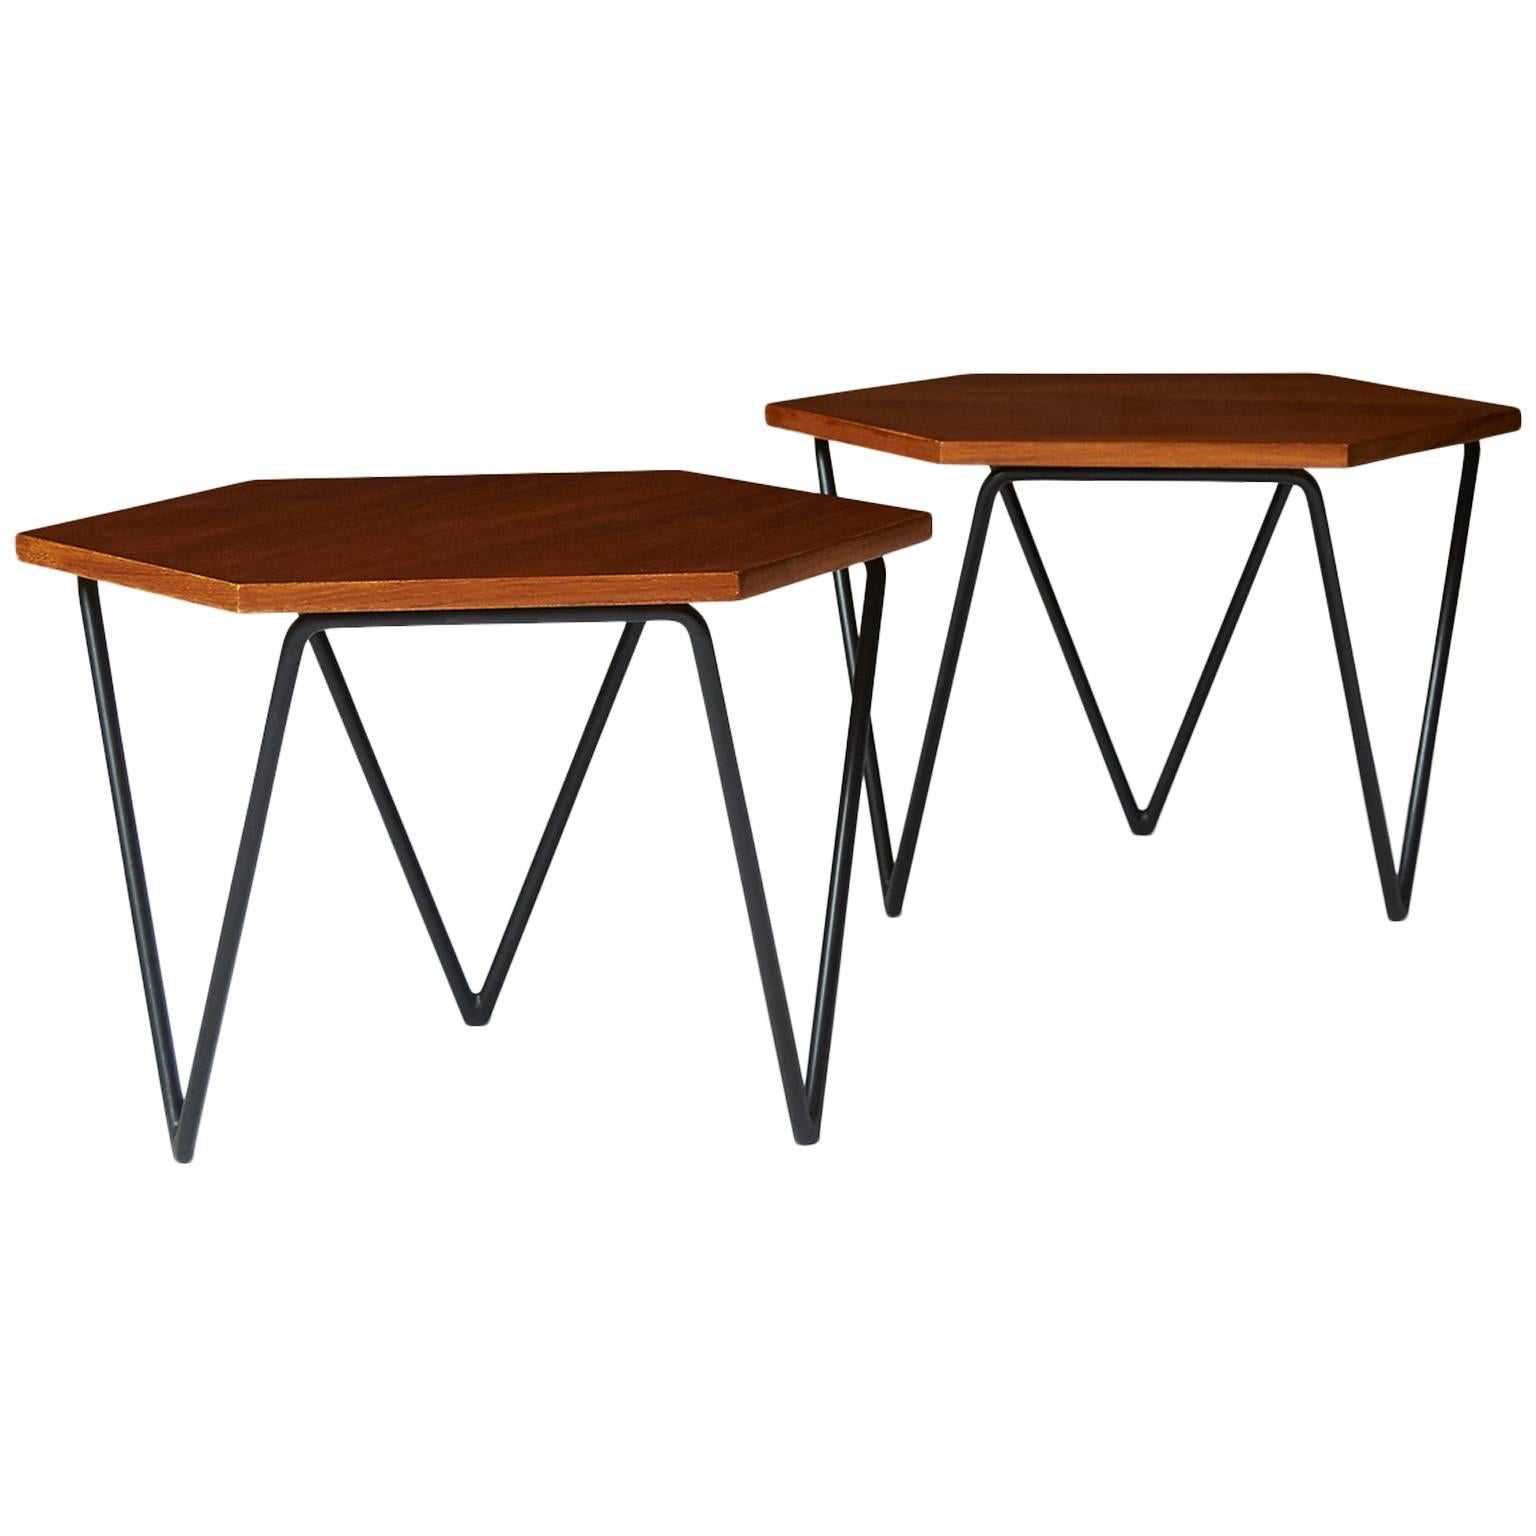 Rare Pair of Coffee Tables by Gio Ponti